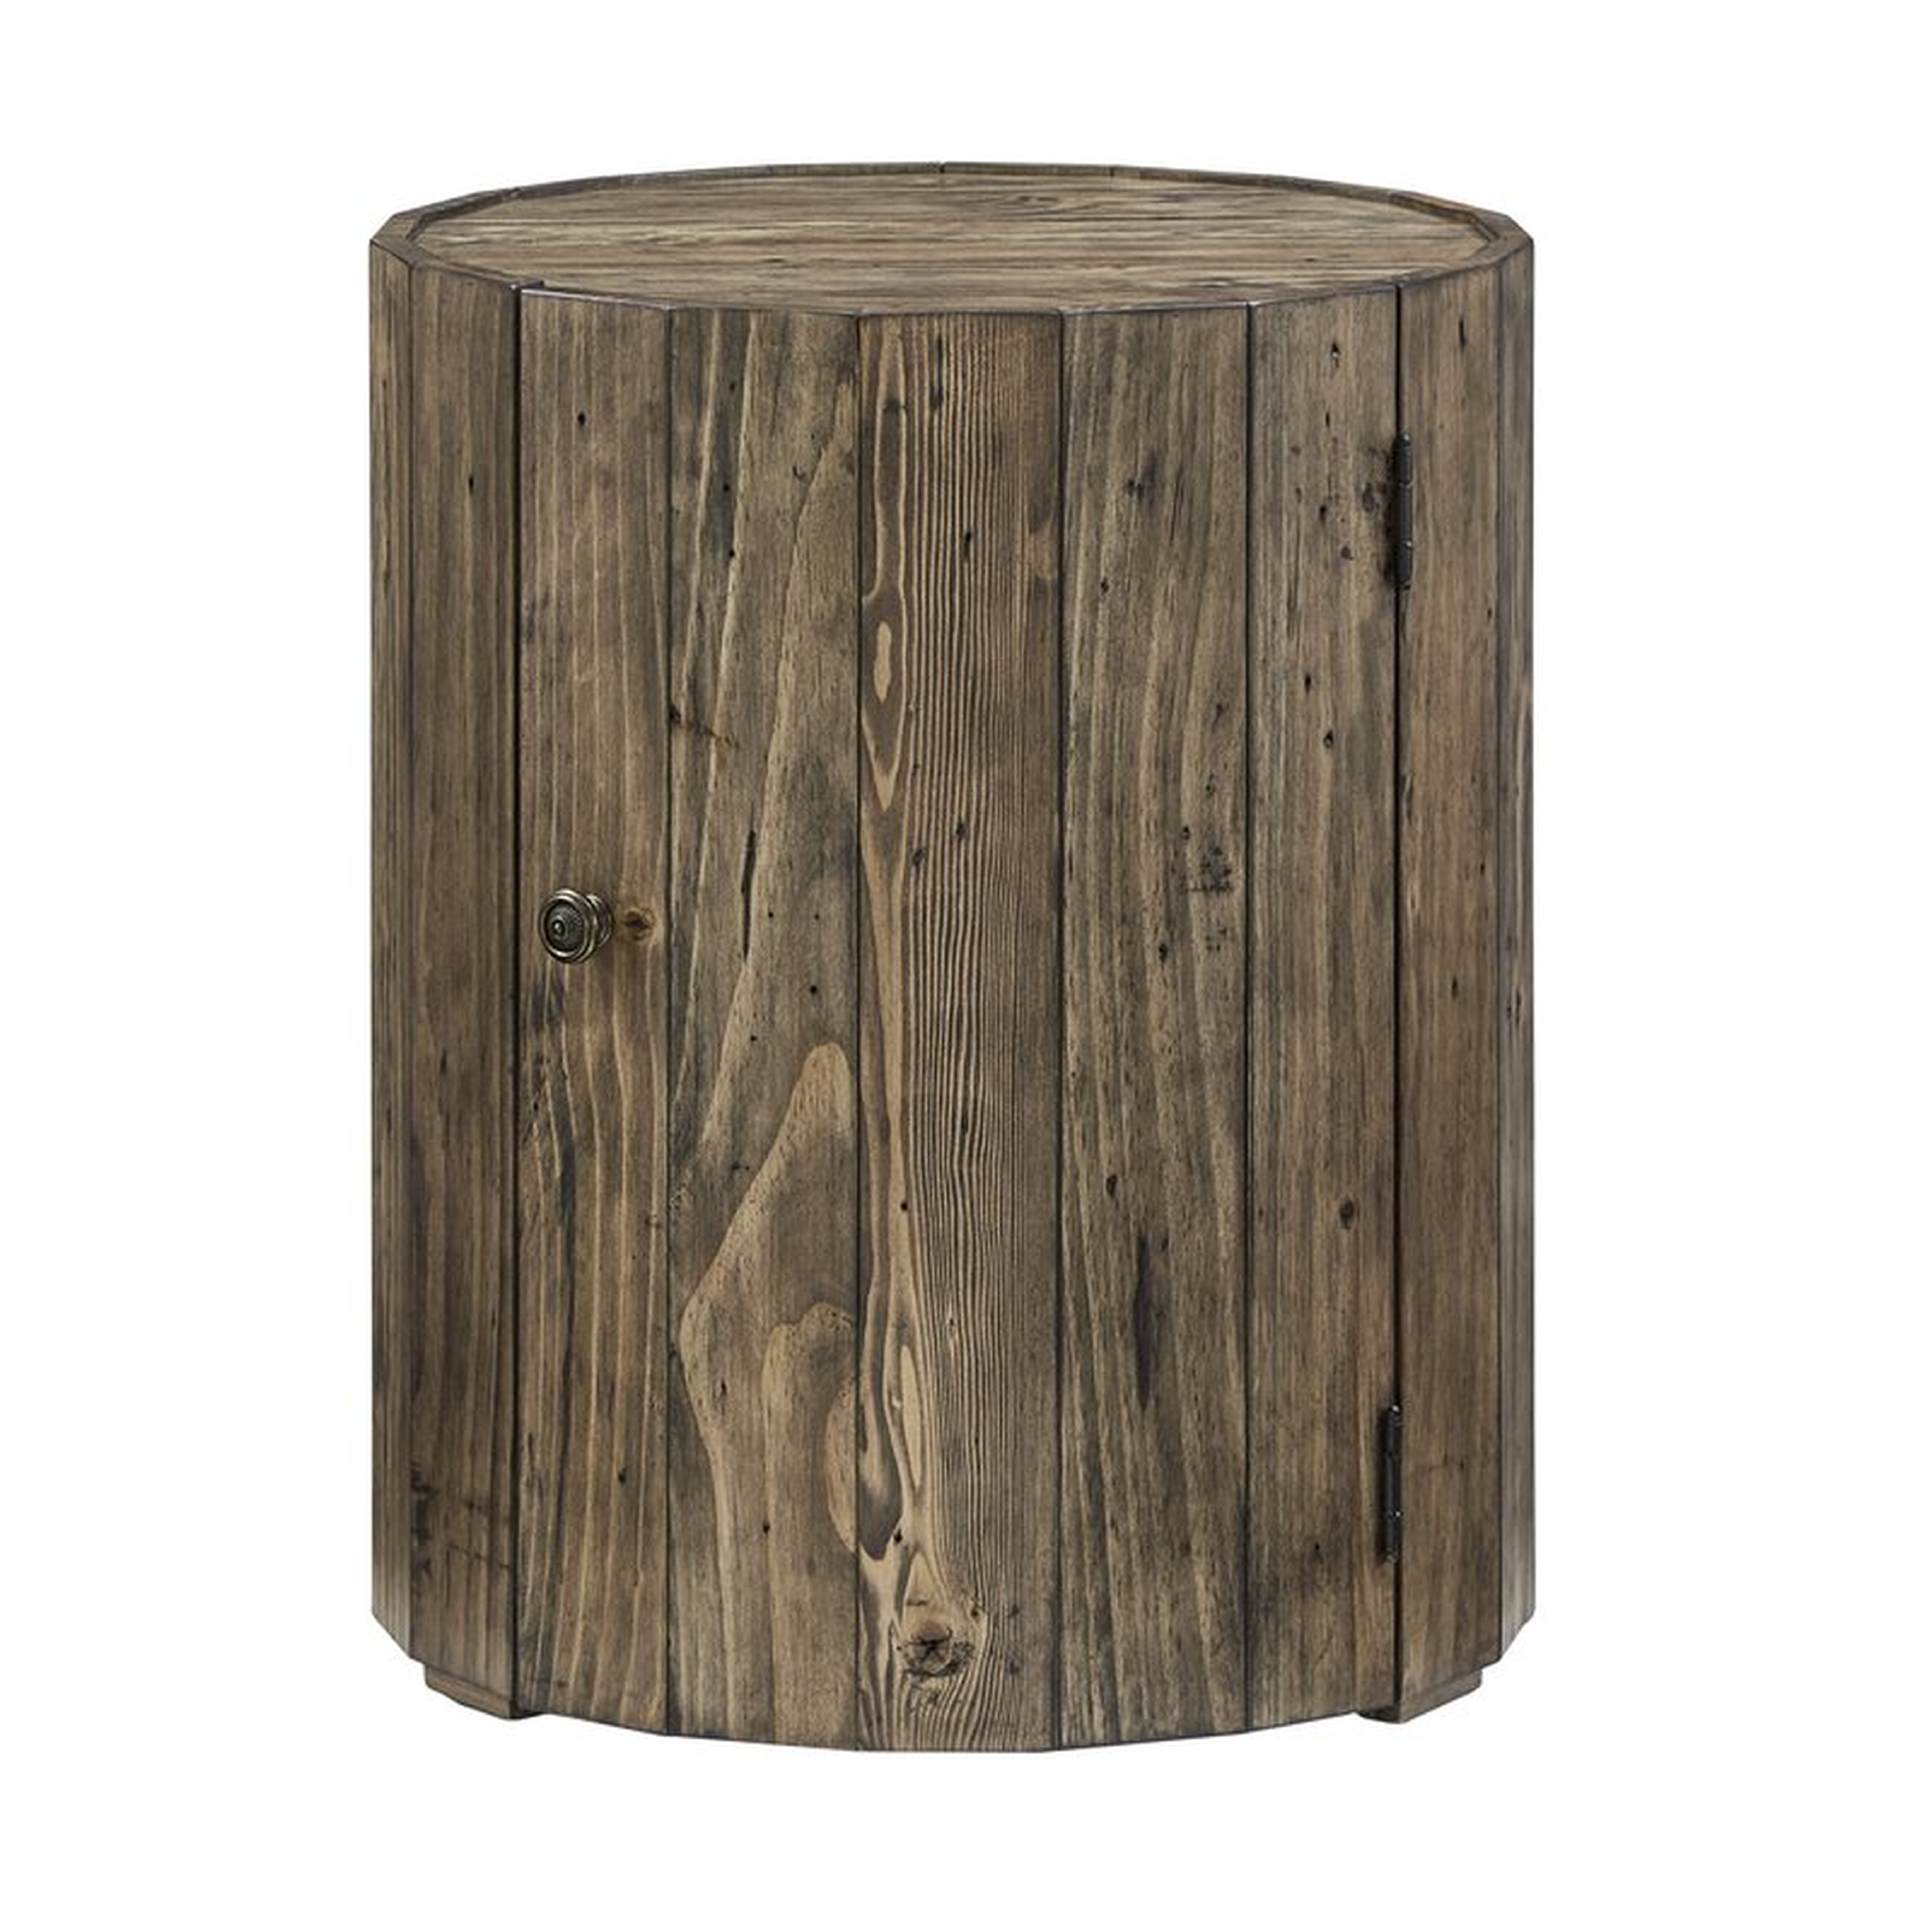 Steigerwald Solid Wood Drum End Table with Storage - Wayfair